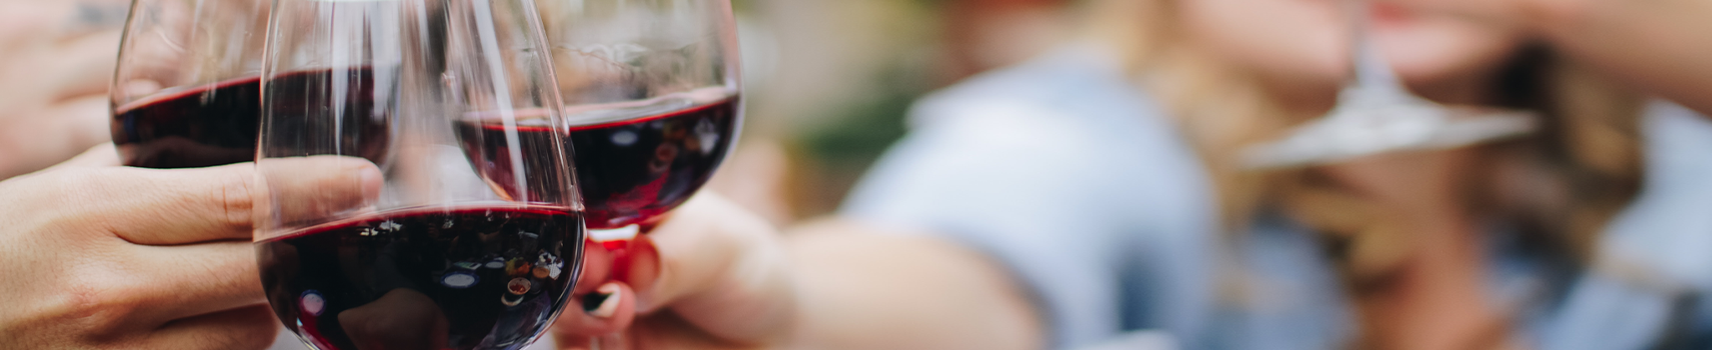 Vinos tintos TORO D.O.P. Compra online los mejores vinos  tintos